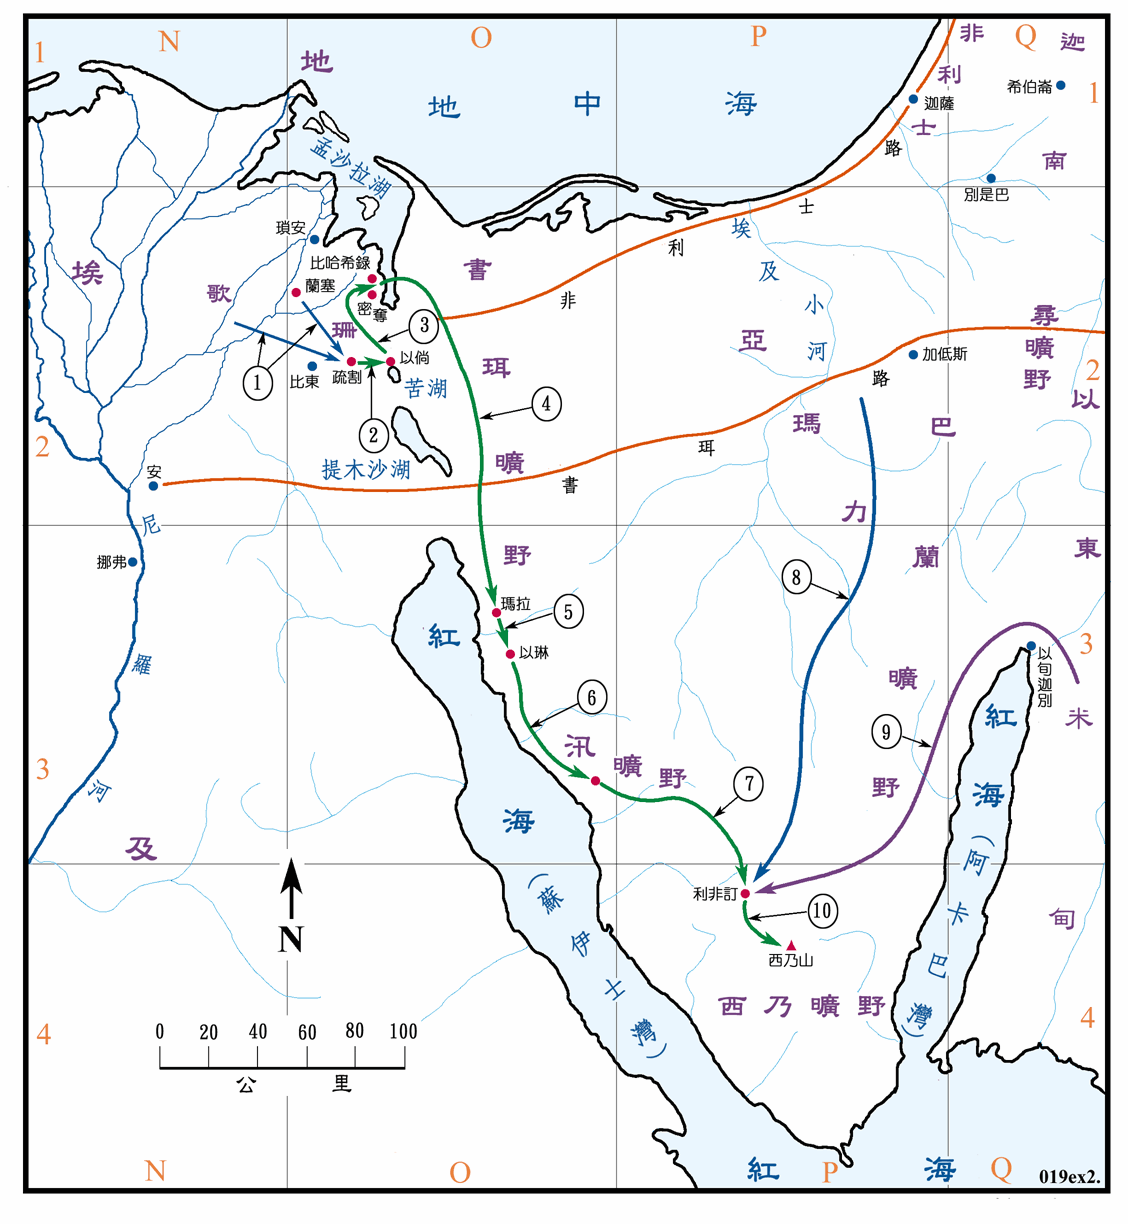 埃及地形图 - 埃及地图 - 地理教师网